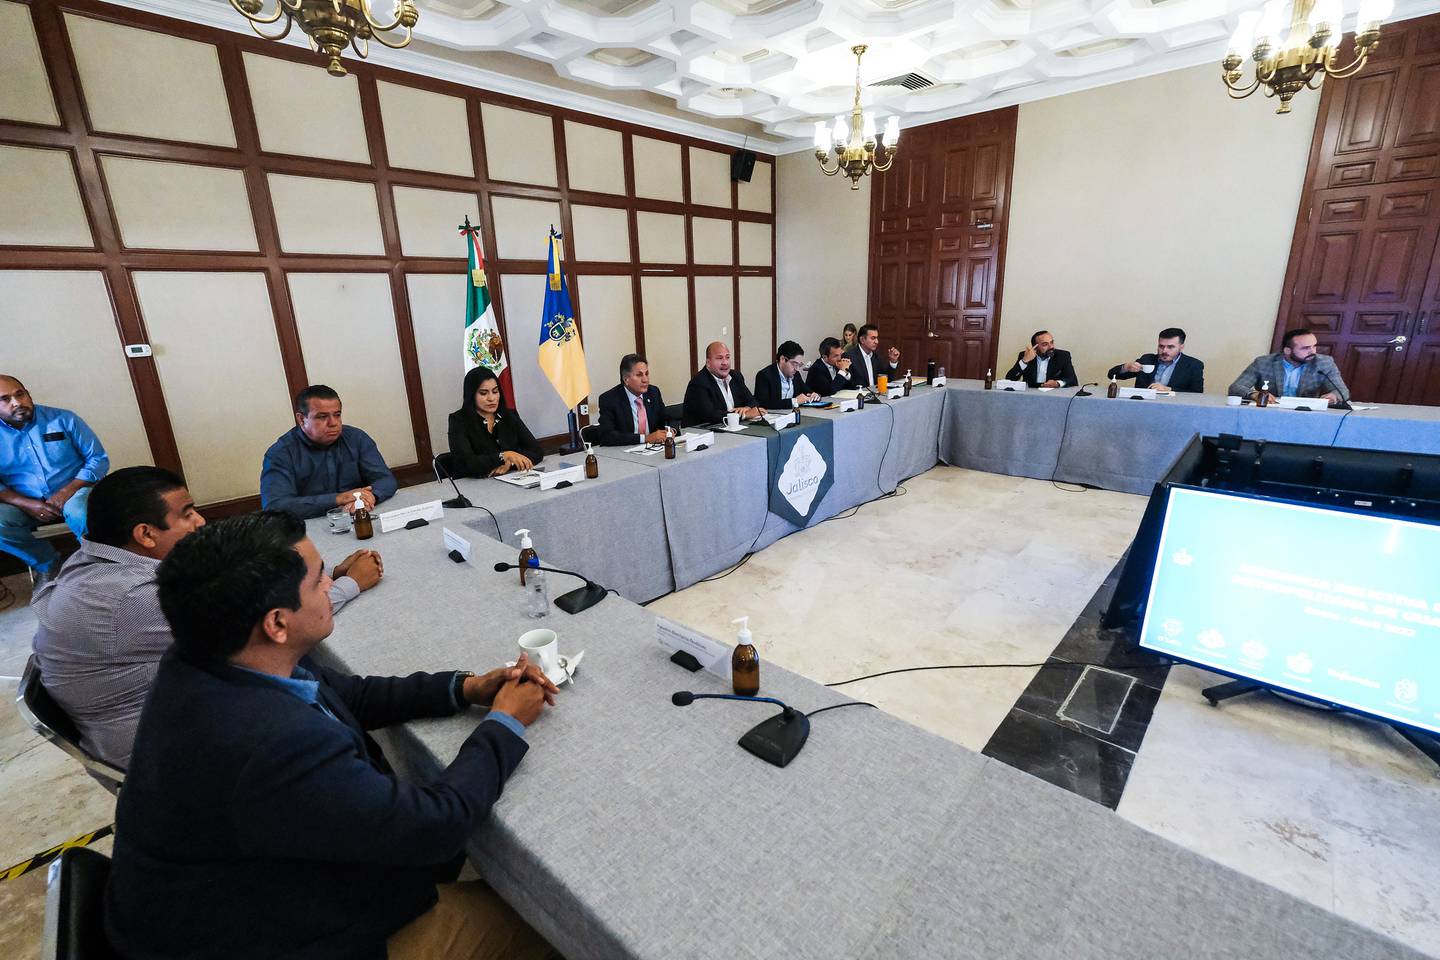 En la presentación de los resultados estuvieron presentes los alcaldes de toda la Zona Metropolitana de Guadalajara.